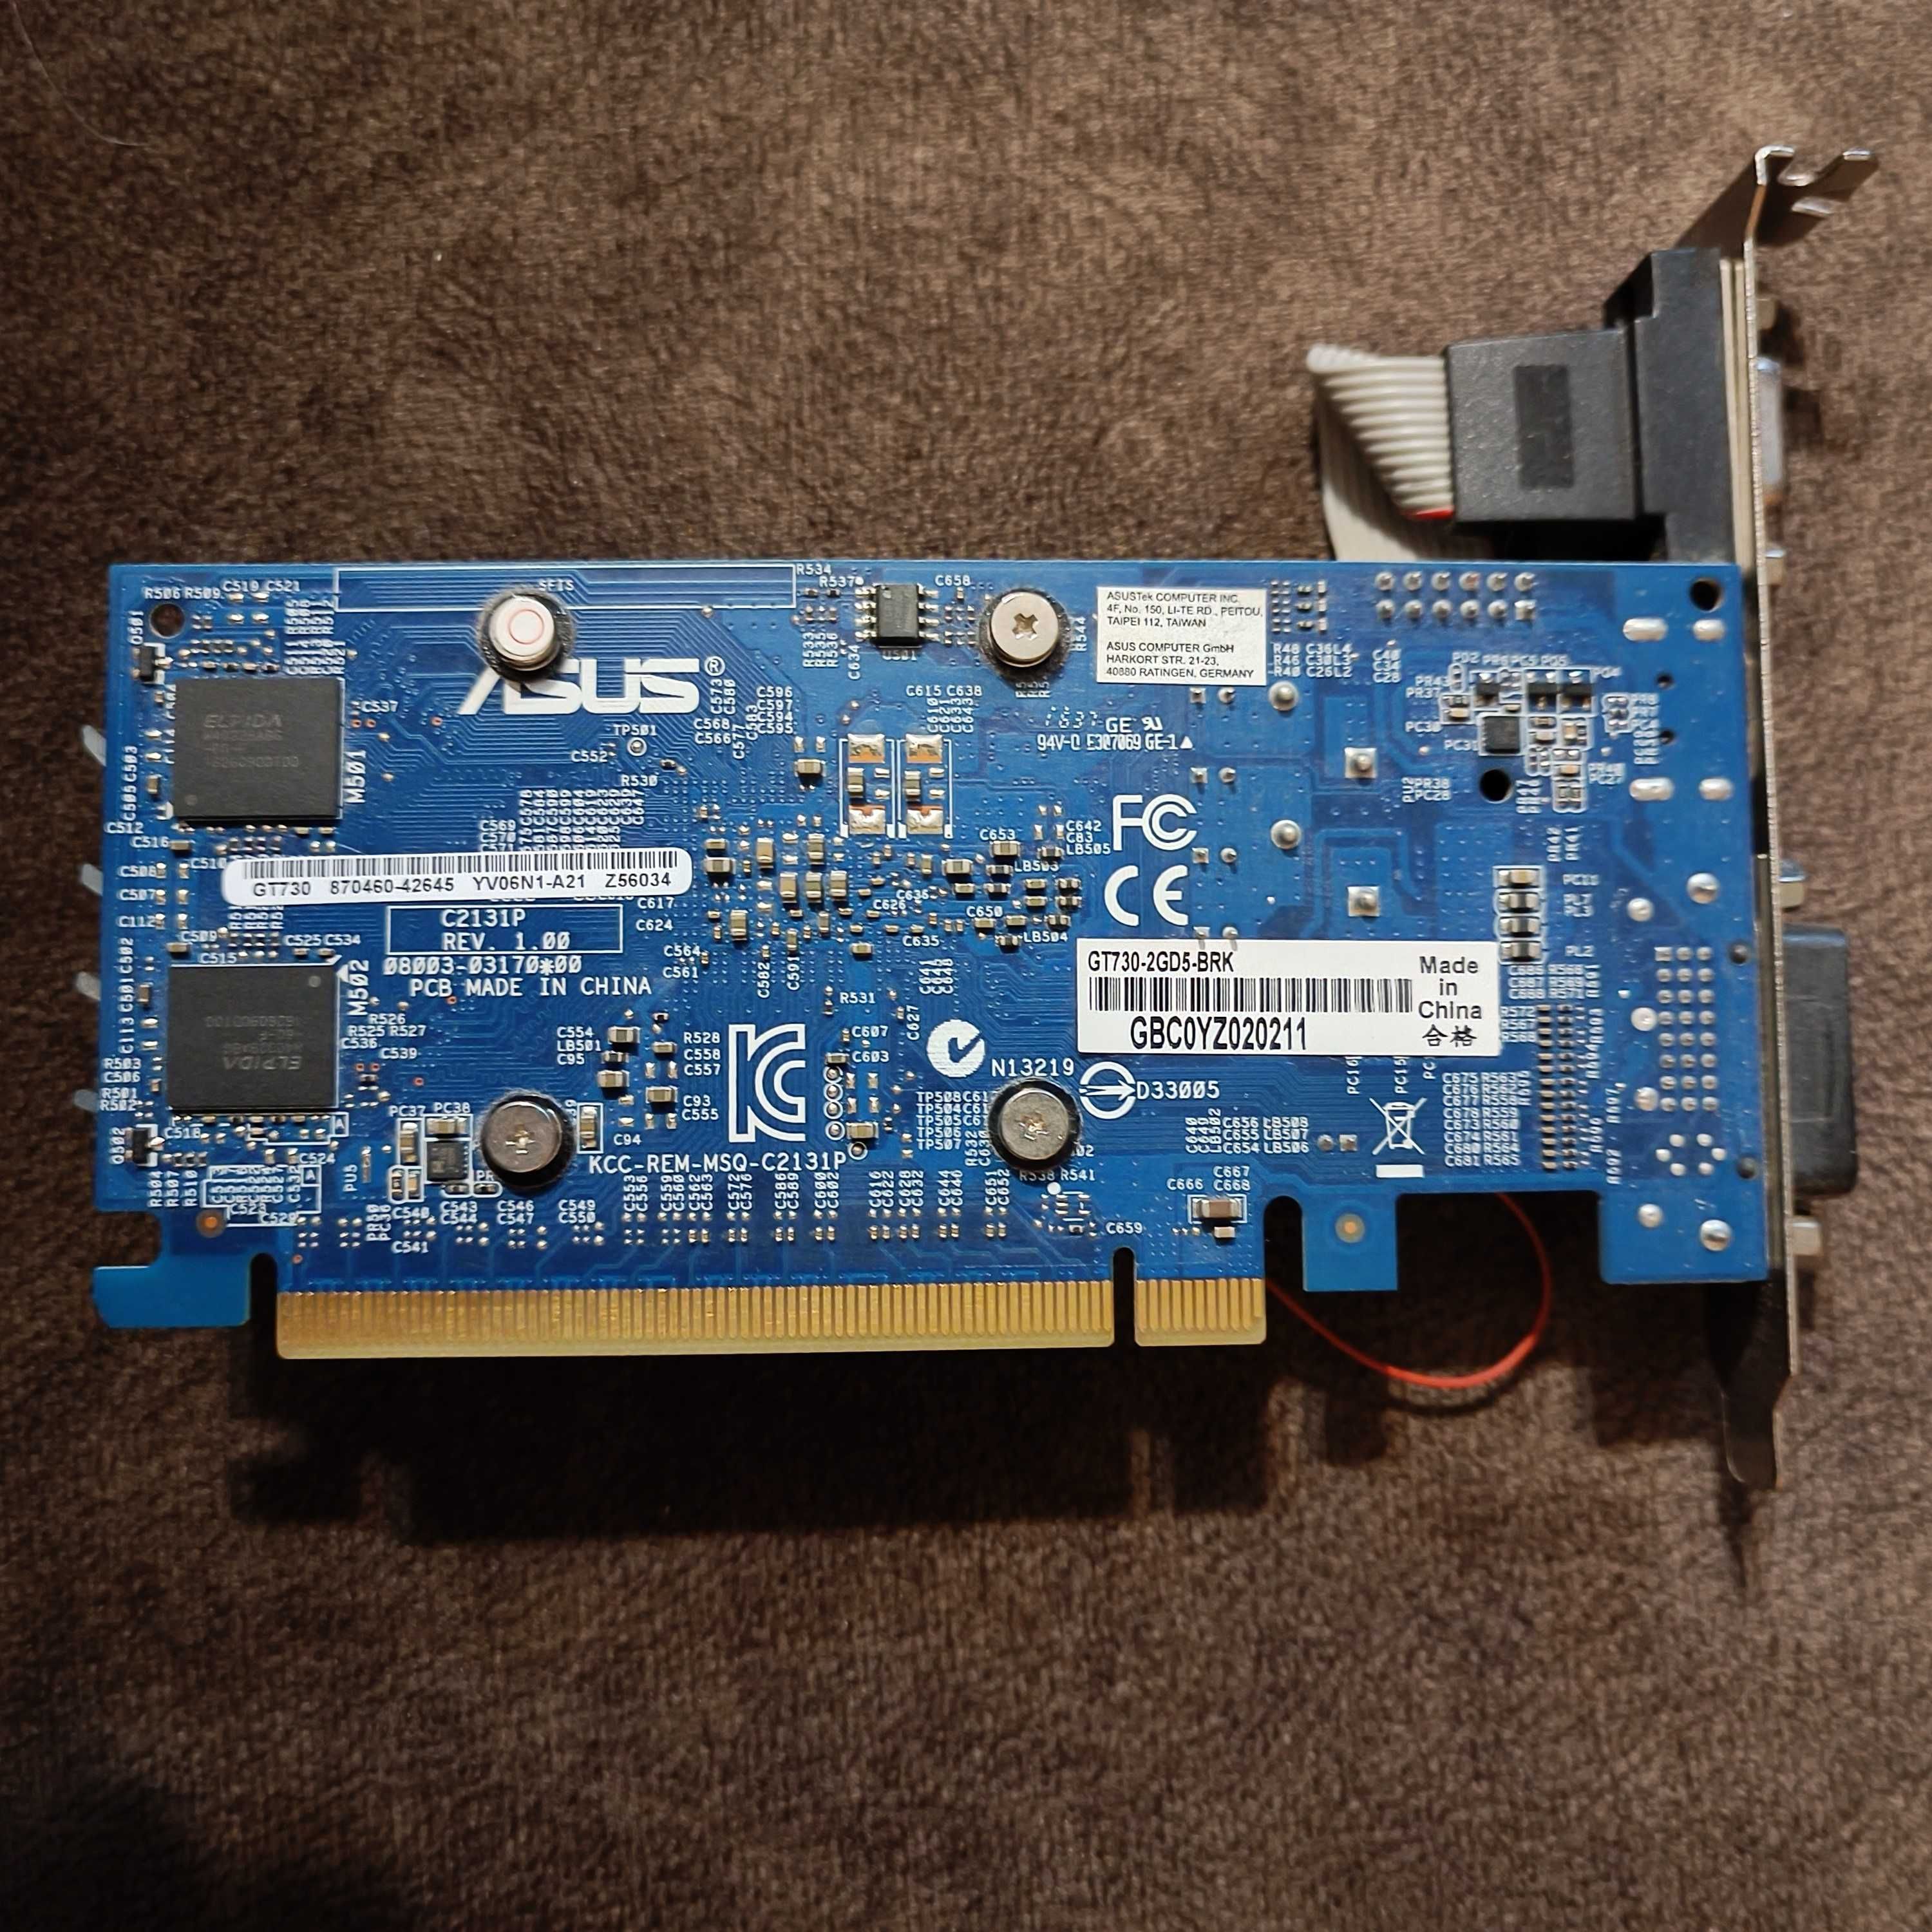 Відеокарта Asus GeForce GT 730 2GB GDDR5